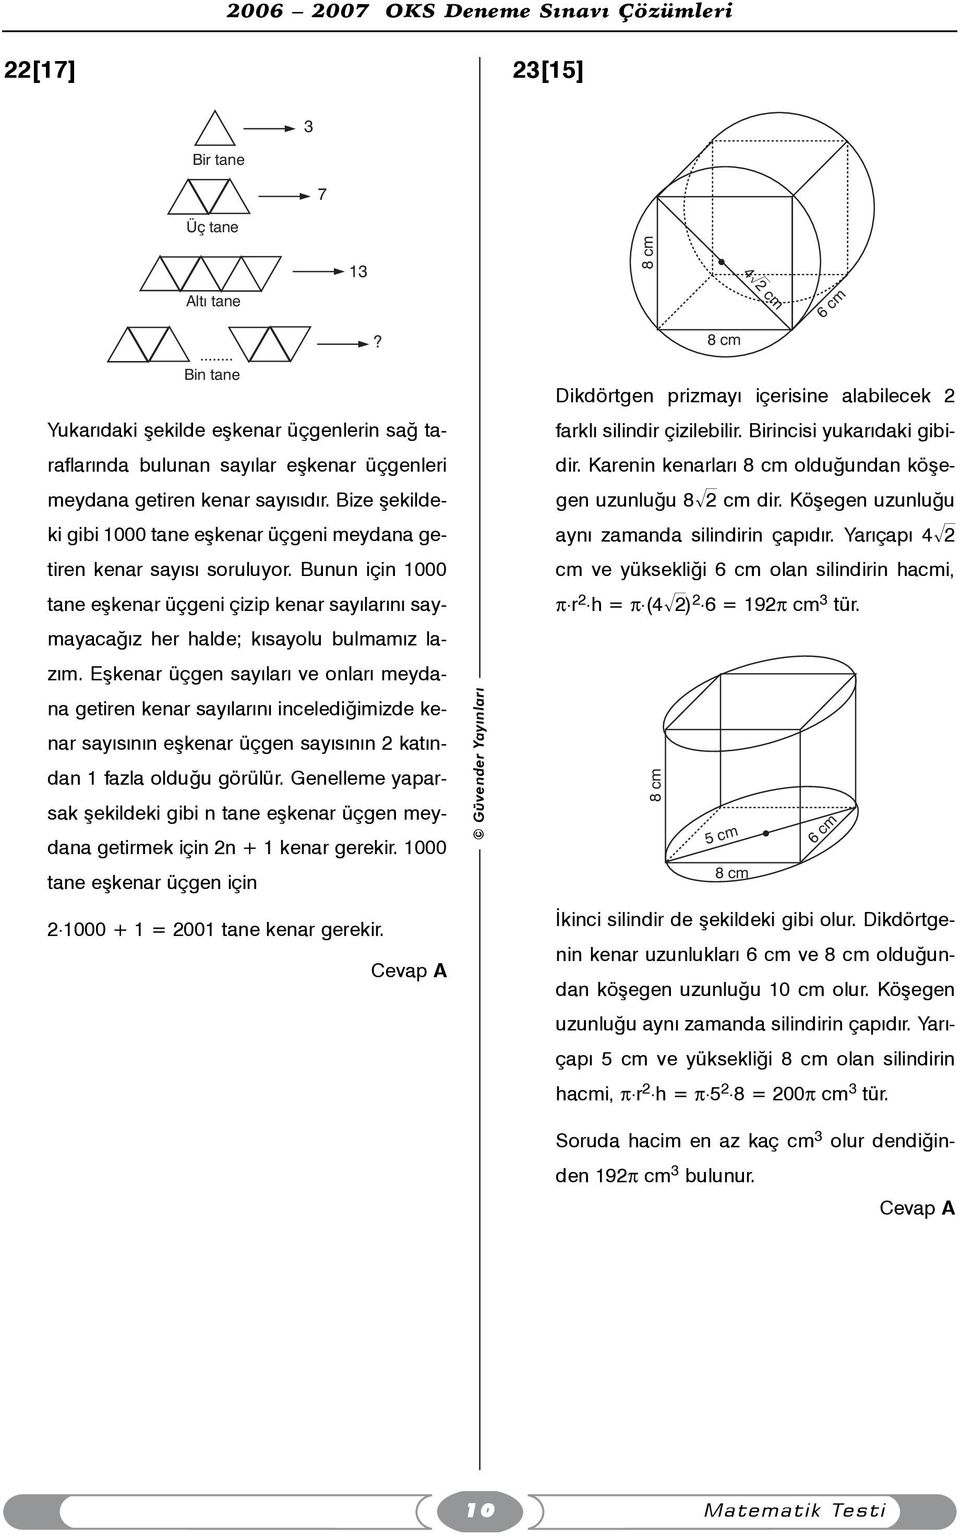 Eþkenar üçgen sayýlarý ve onlarý meydana getiren kenar sayýlarýný incelediðimizde kenar sayýsýnýn eþkenar üçgen sayýsýnýn 2 katýndan 1 fazla olduðu görülür.